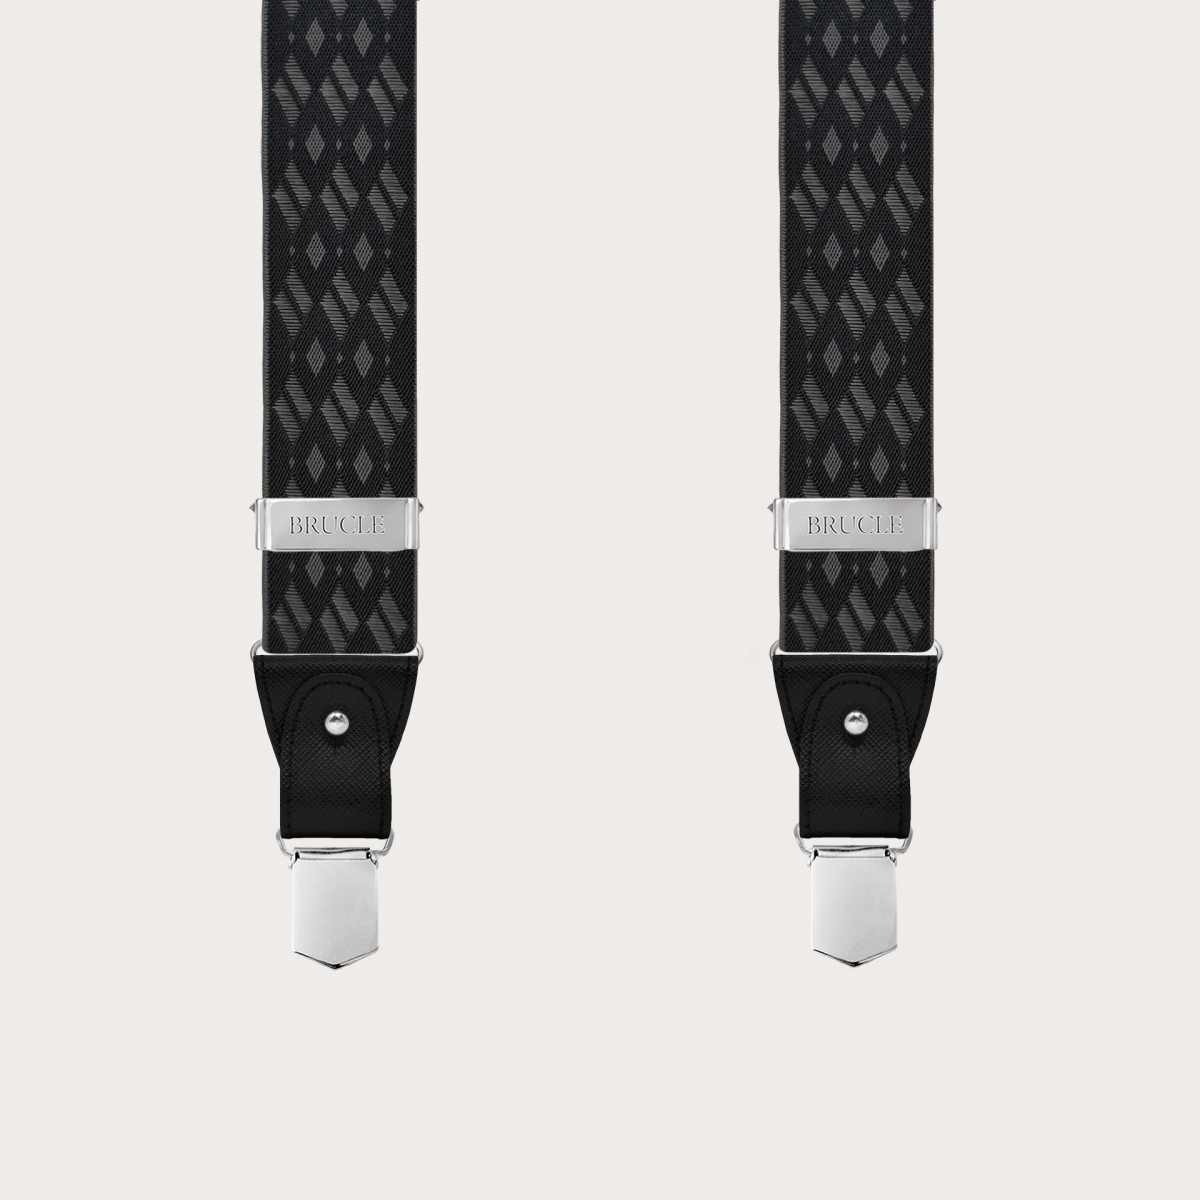 Bretelles élégantes à motifs de losanges noires et grises pour boutons ou clips sans nickel